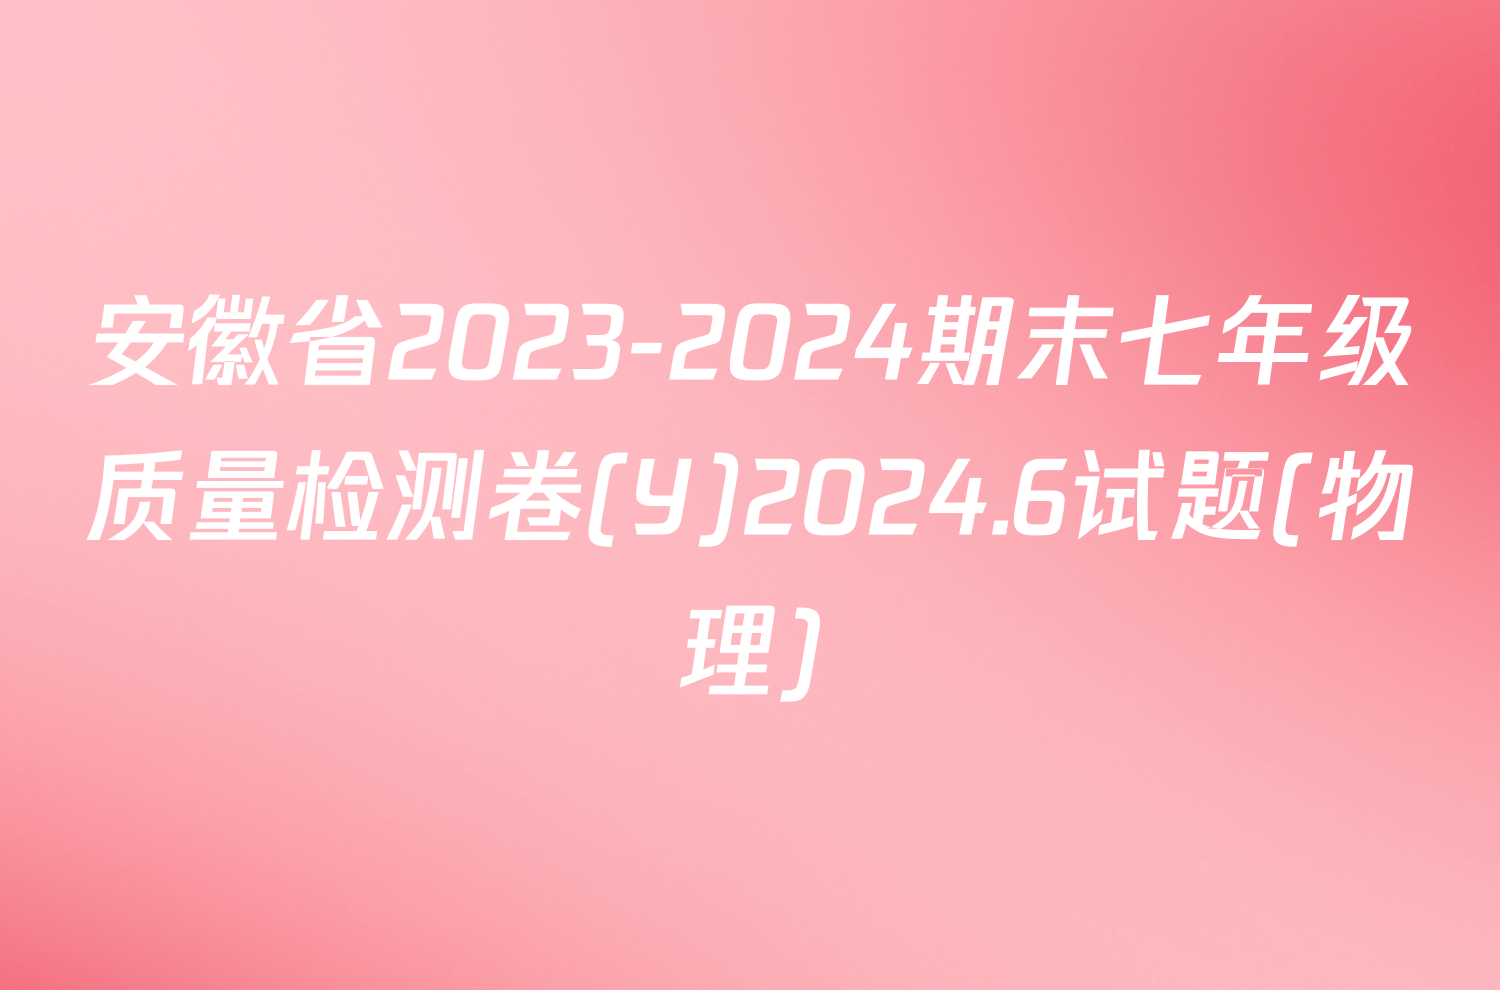 安徽省2023-2024期末七年级质量检测卷(Y)2024.6试题(物理)